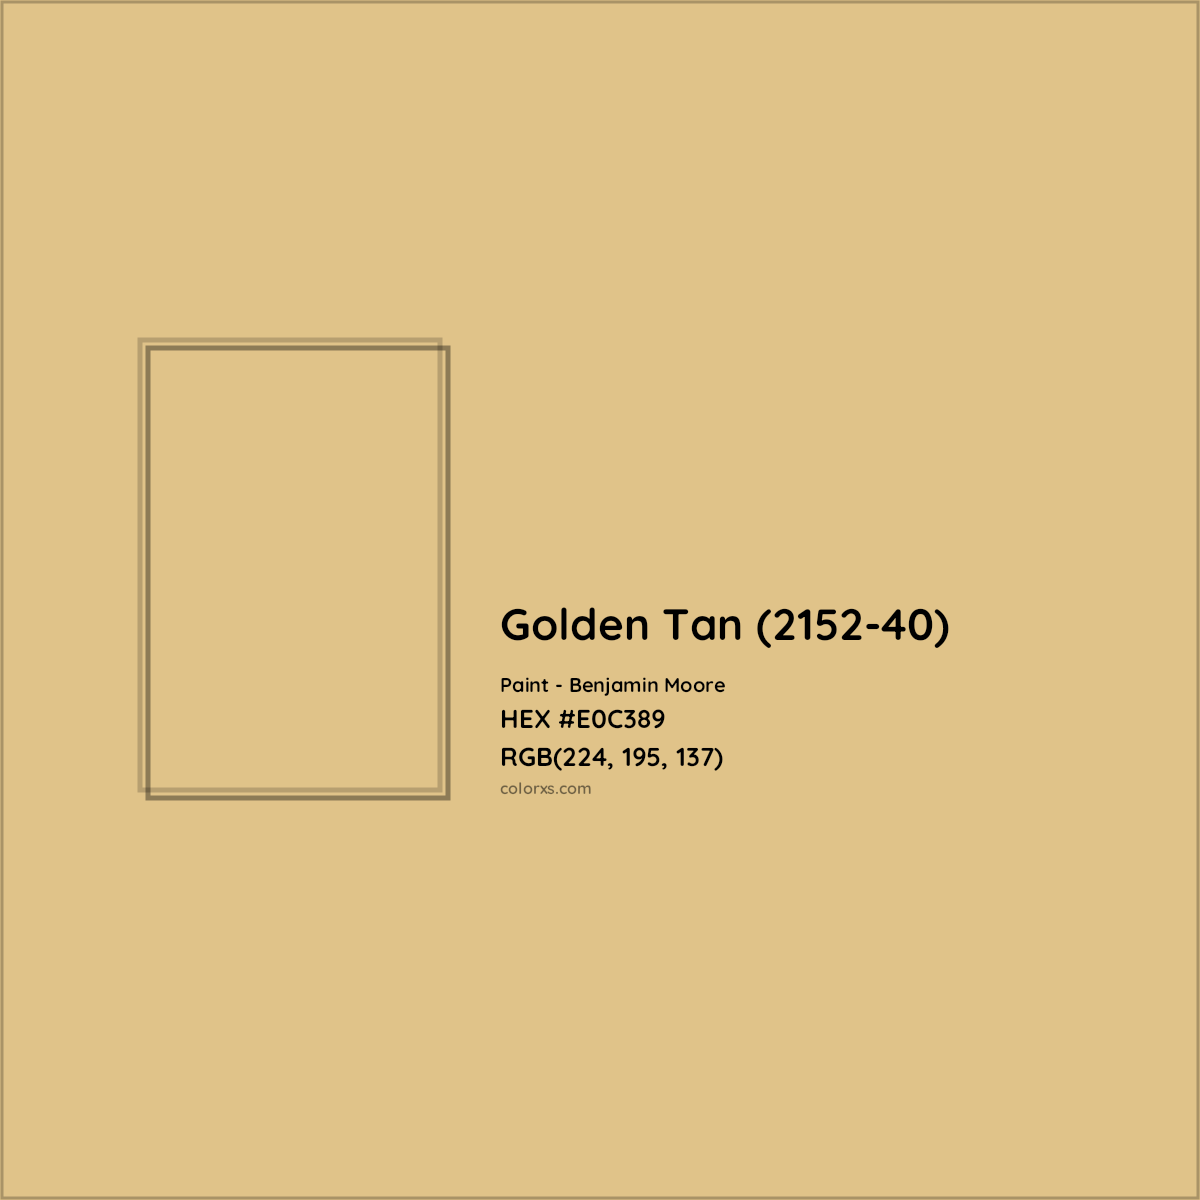 HEX #E0C389 Golden Tan (2152-40) Paint Benjamin Moore - Color Code